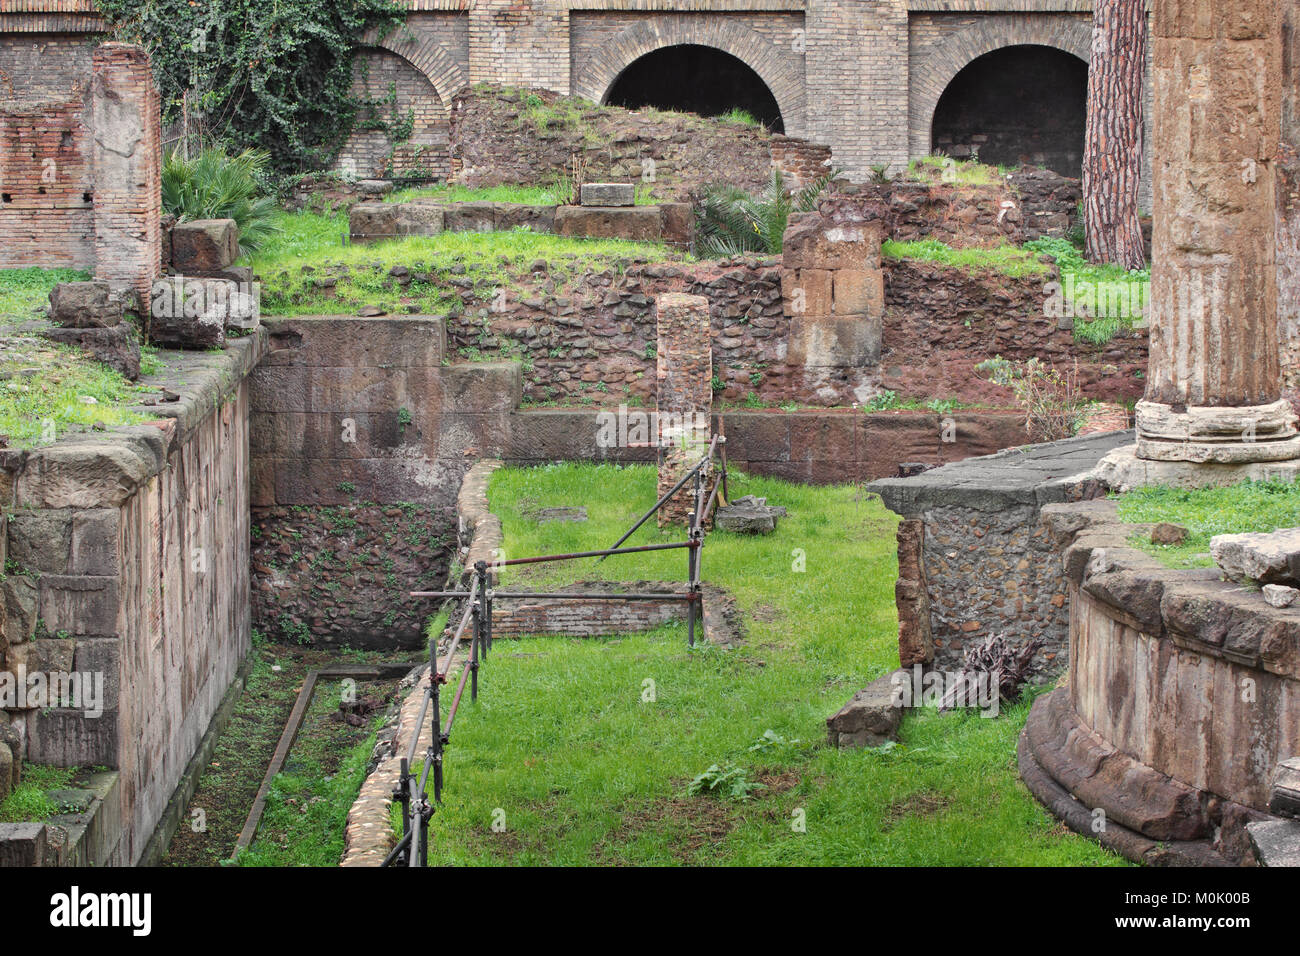 L'endroit où Jules César a été poignardé à mort (selon un rapport du Conseil national de recherches) Banque D'Images